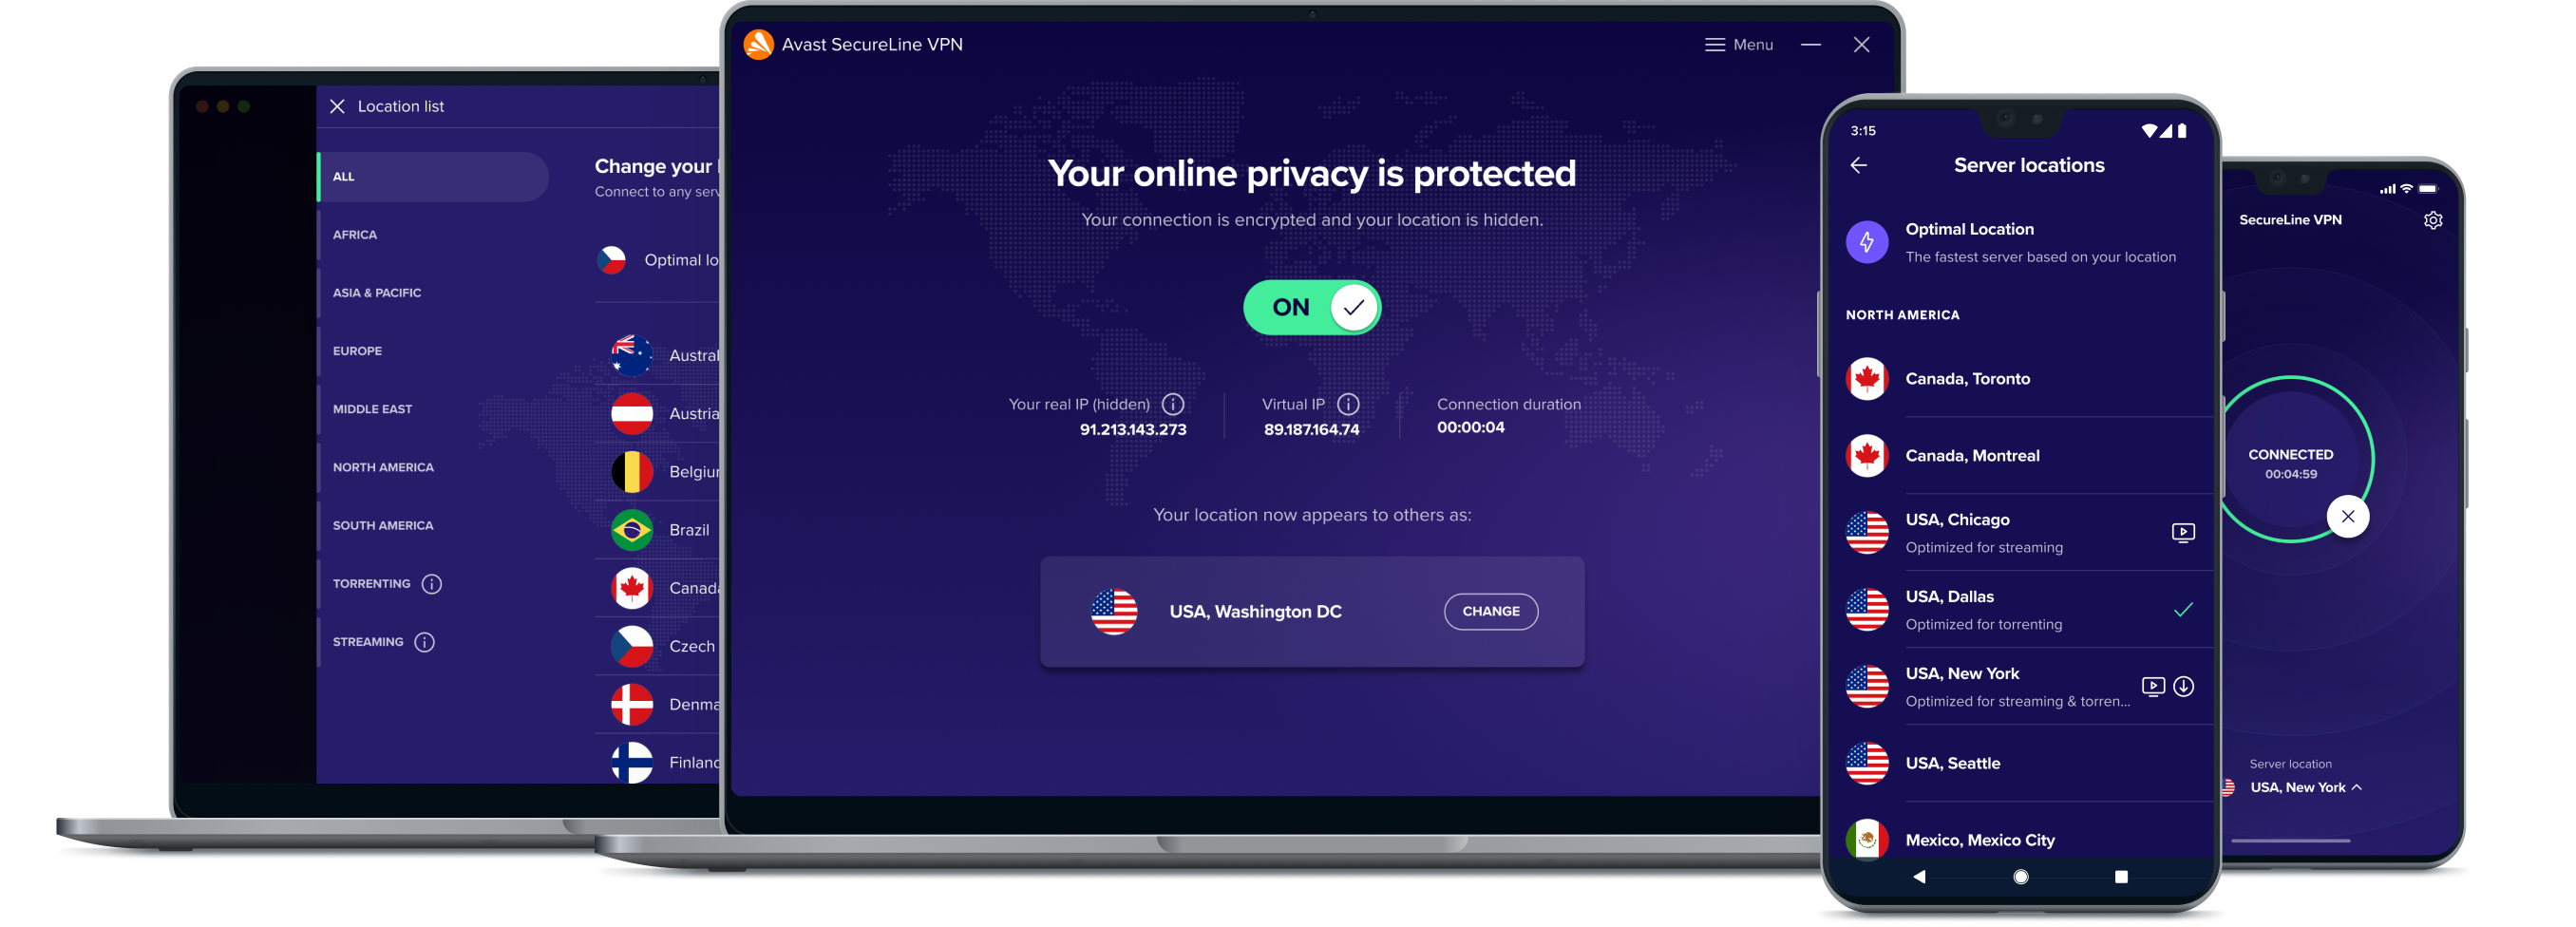 Ξεκλειδώστε μεγαλύτερη διαδικτυακή ελευθερία με την υπηρεσία VPN μας